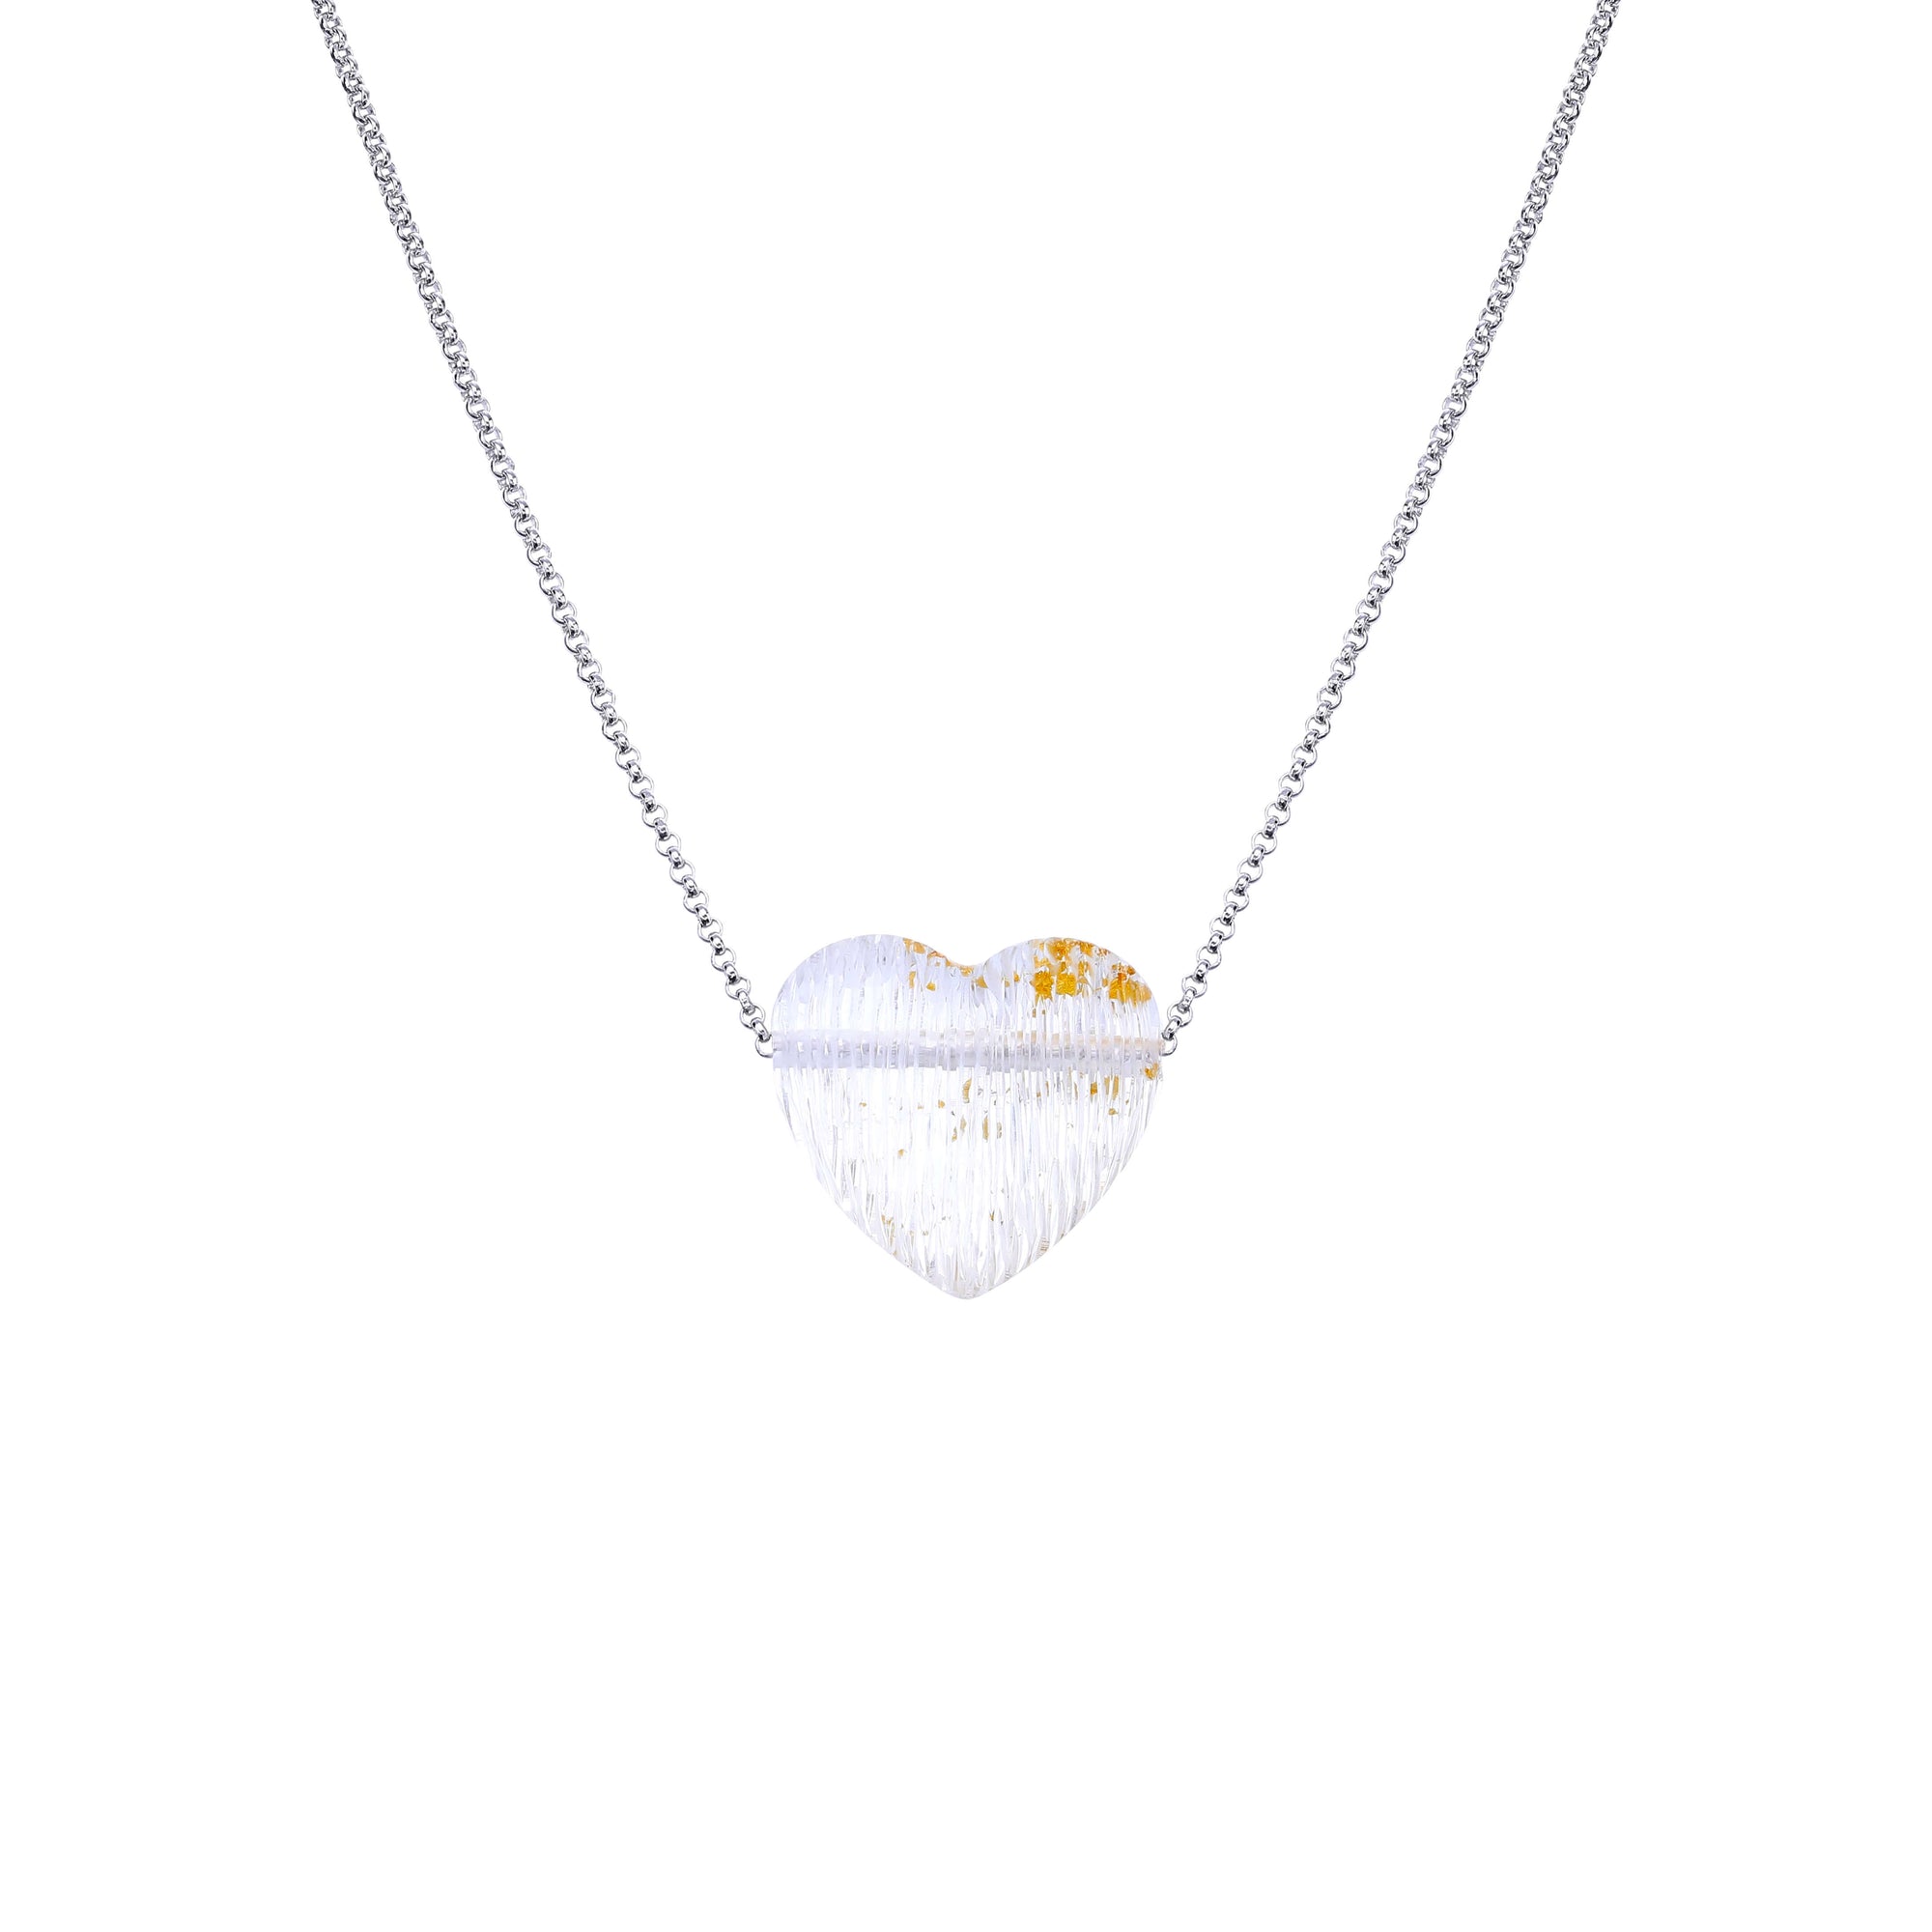 24K gold leaf pendant necklace